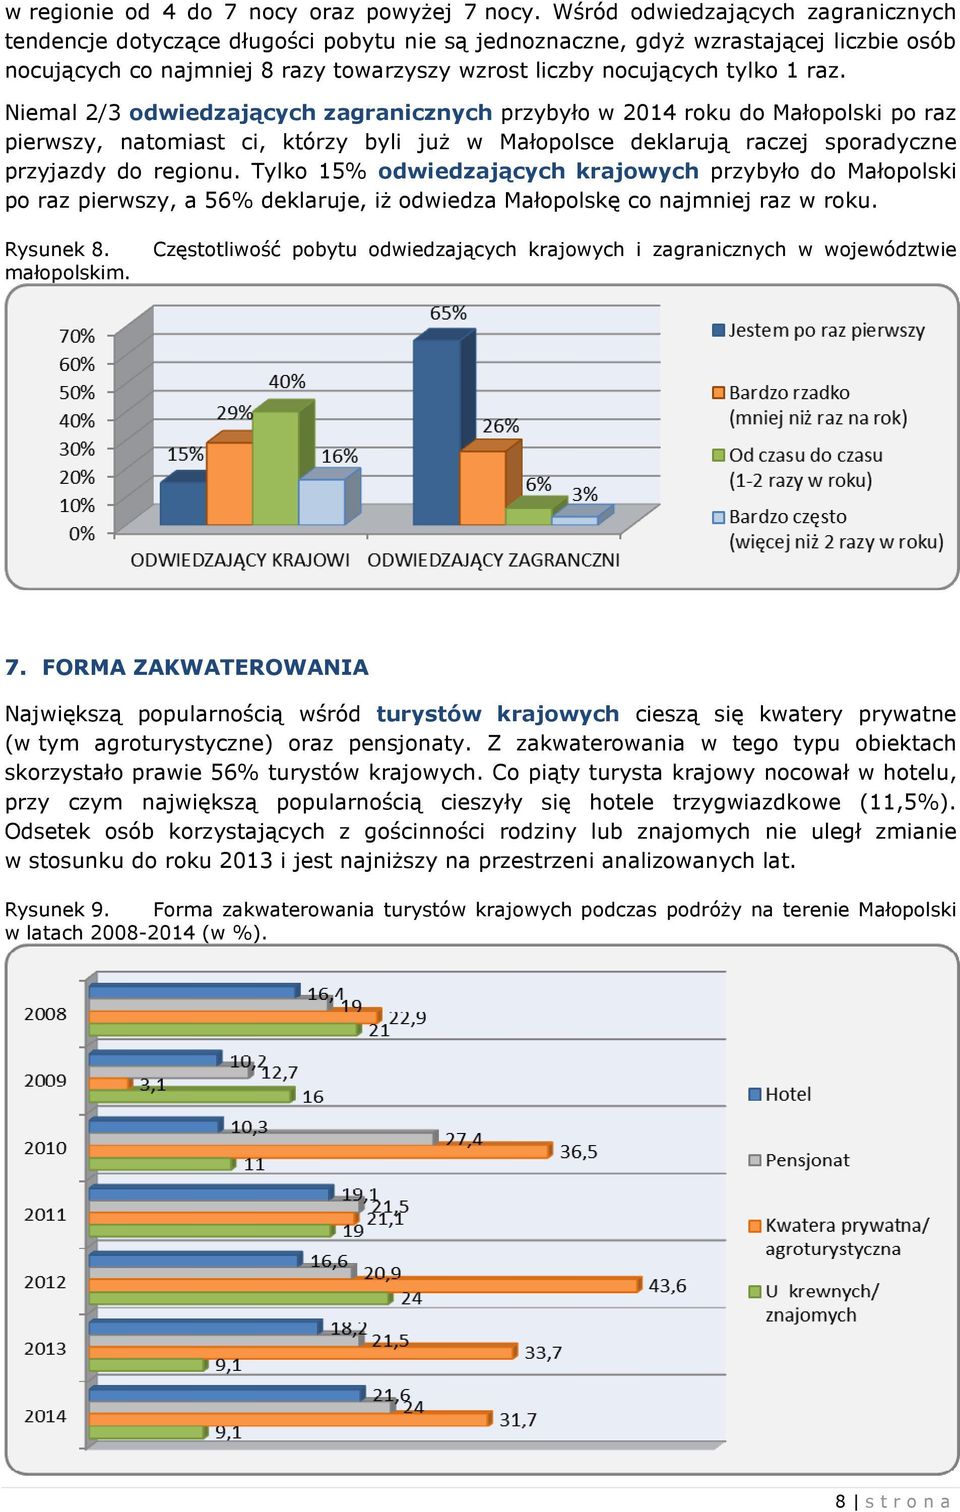 raz. Niemal 2/3 odwiedzających zagranicznych przybyło w 2014 roku do Małopolski po raz pierwszy, natomiast ci, którzy byli już w Małopolsce deklarują raczej sporadyczne przyjazdy do regionu.